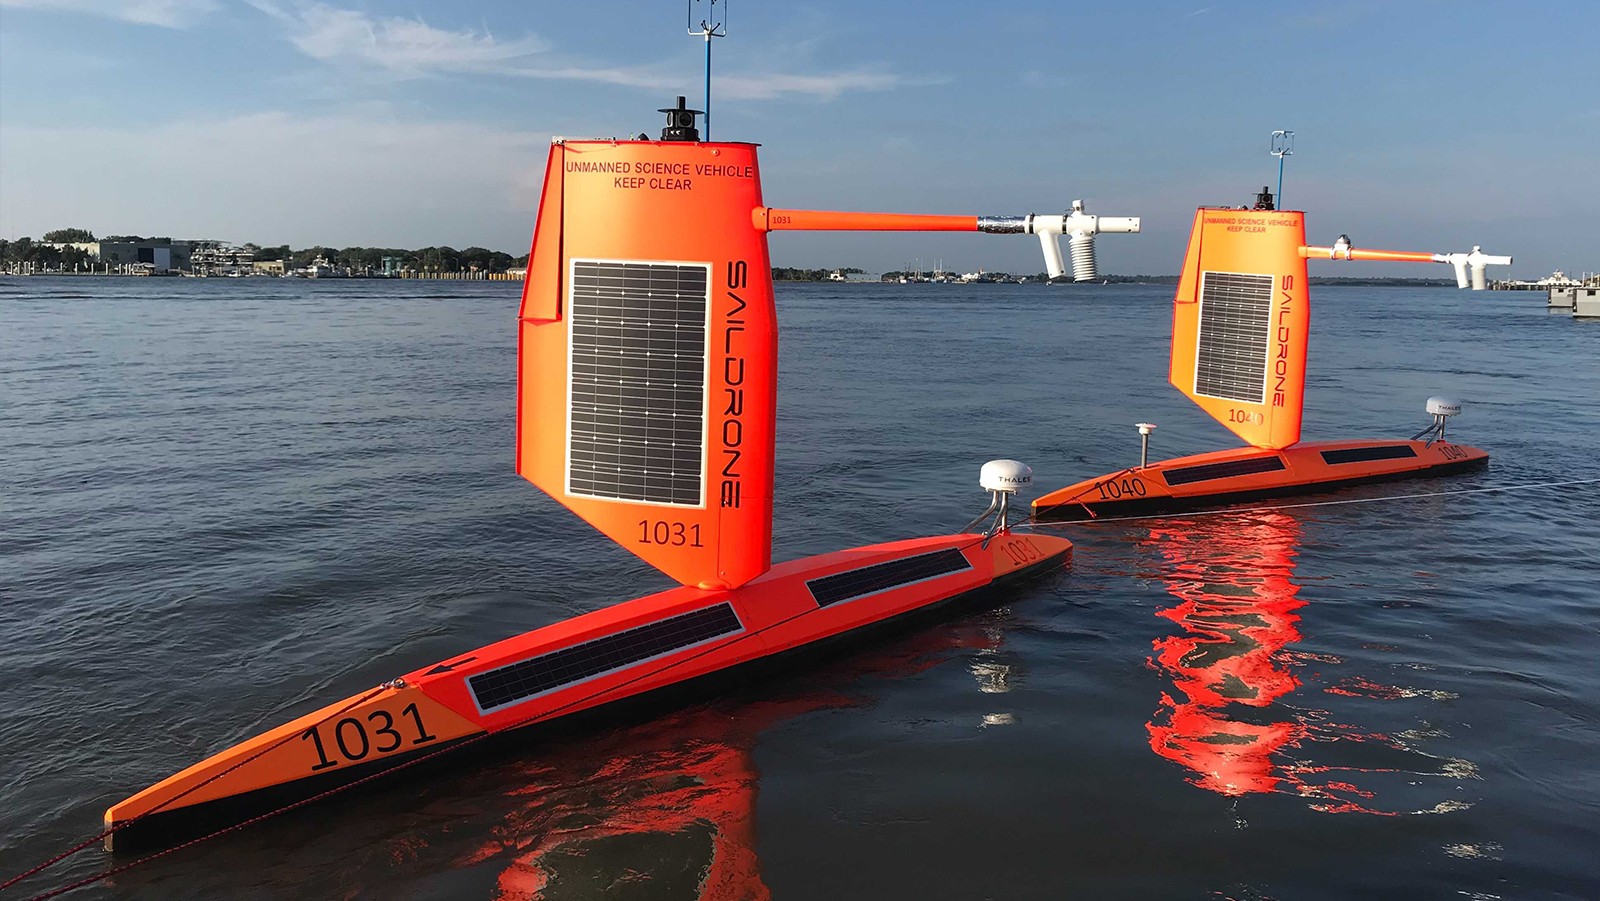 Two large orange saildrones in the calm ocean.